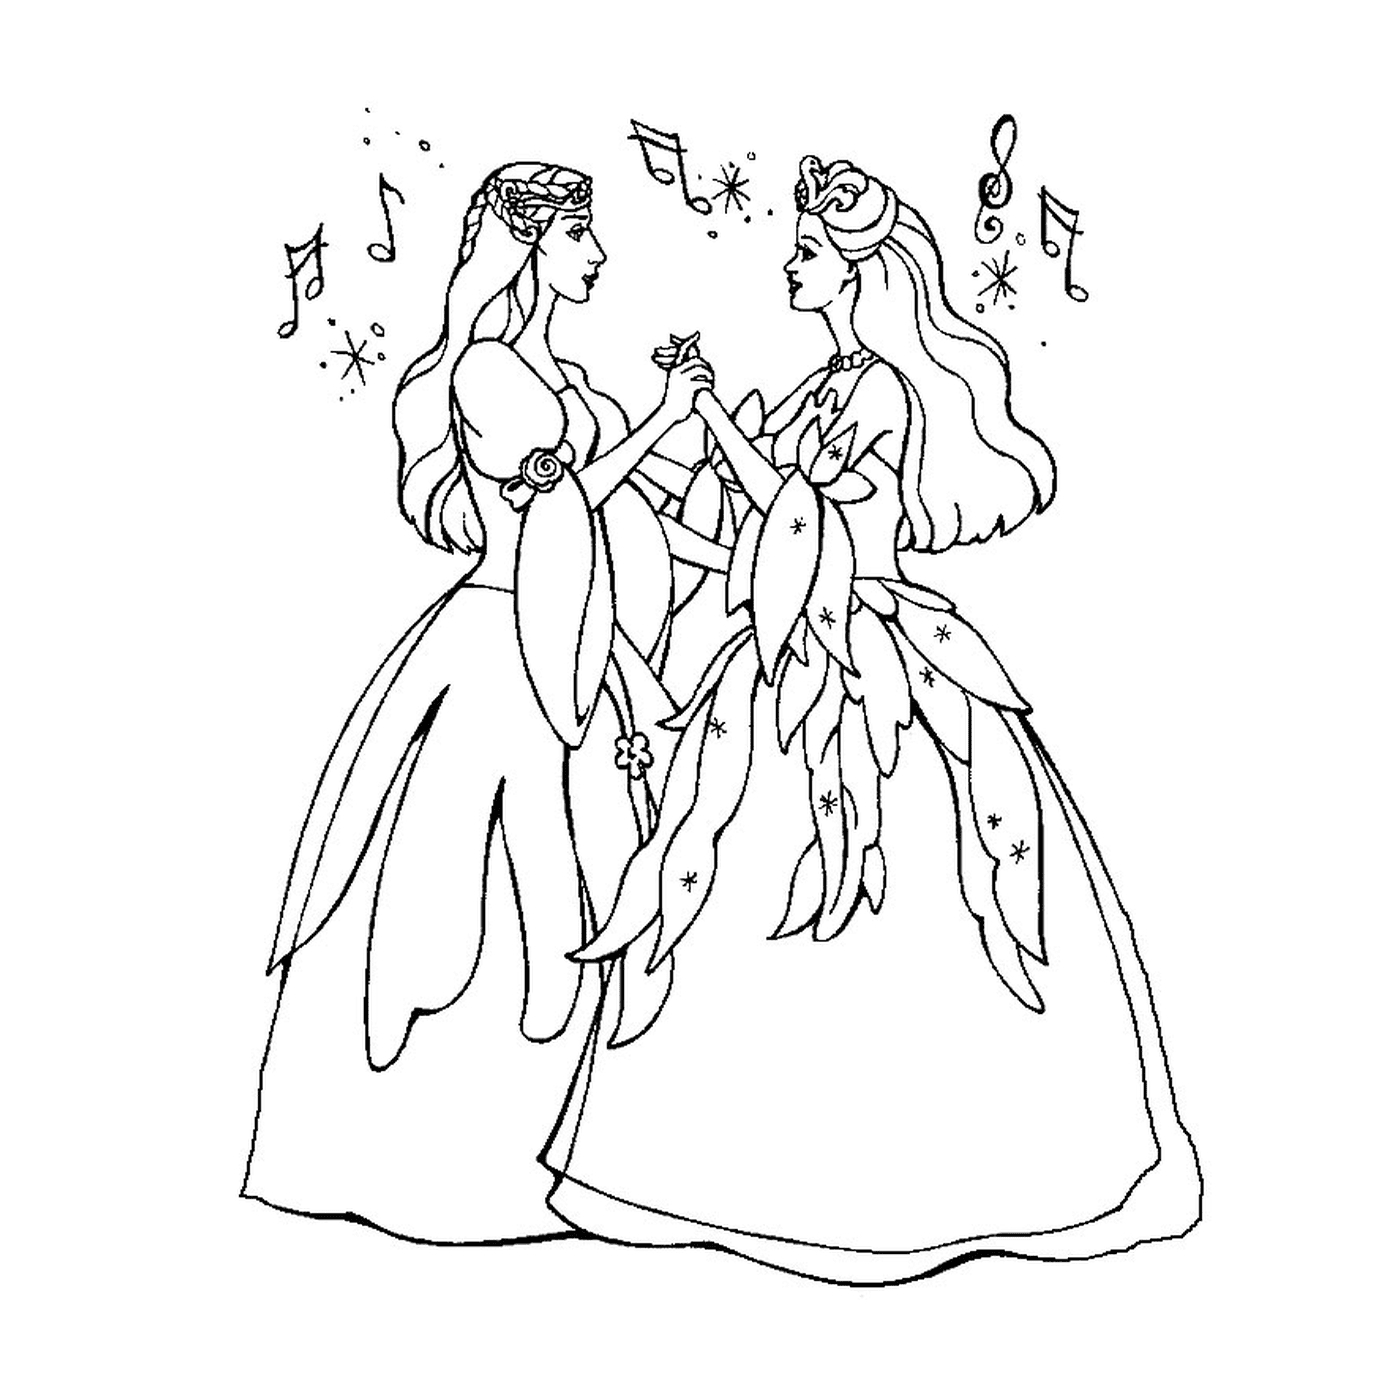  Две женщины, одетые как феи 